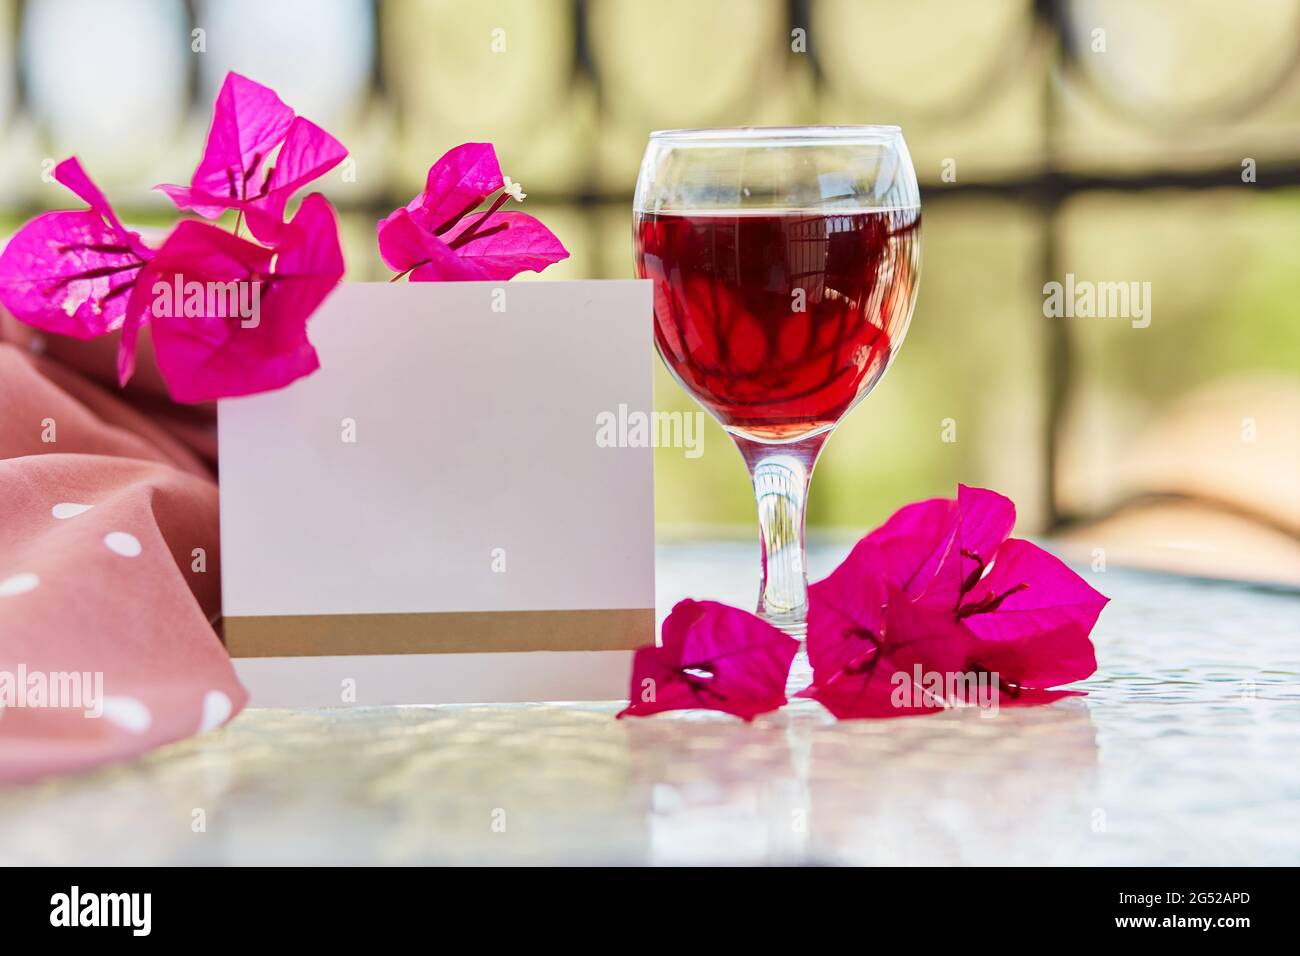 Elegantes Glas Rotwein. Dekorative rosa Blüten von Bougainvillea. Nachbau einer Postkarte oder Einladung. Festlich-romantisches Urlaubskonzept Stockfoto